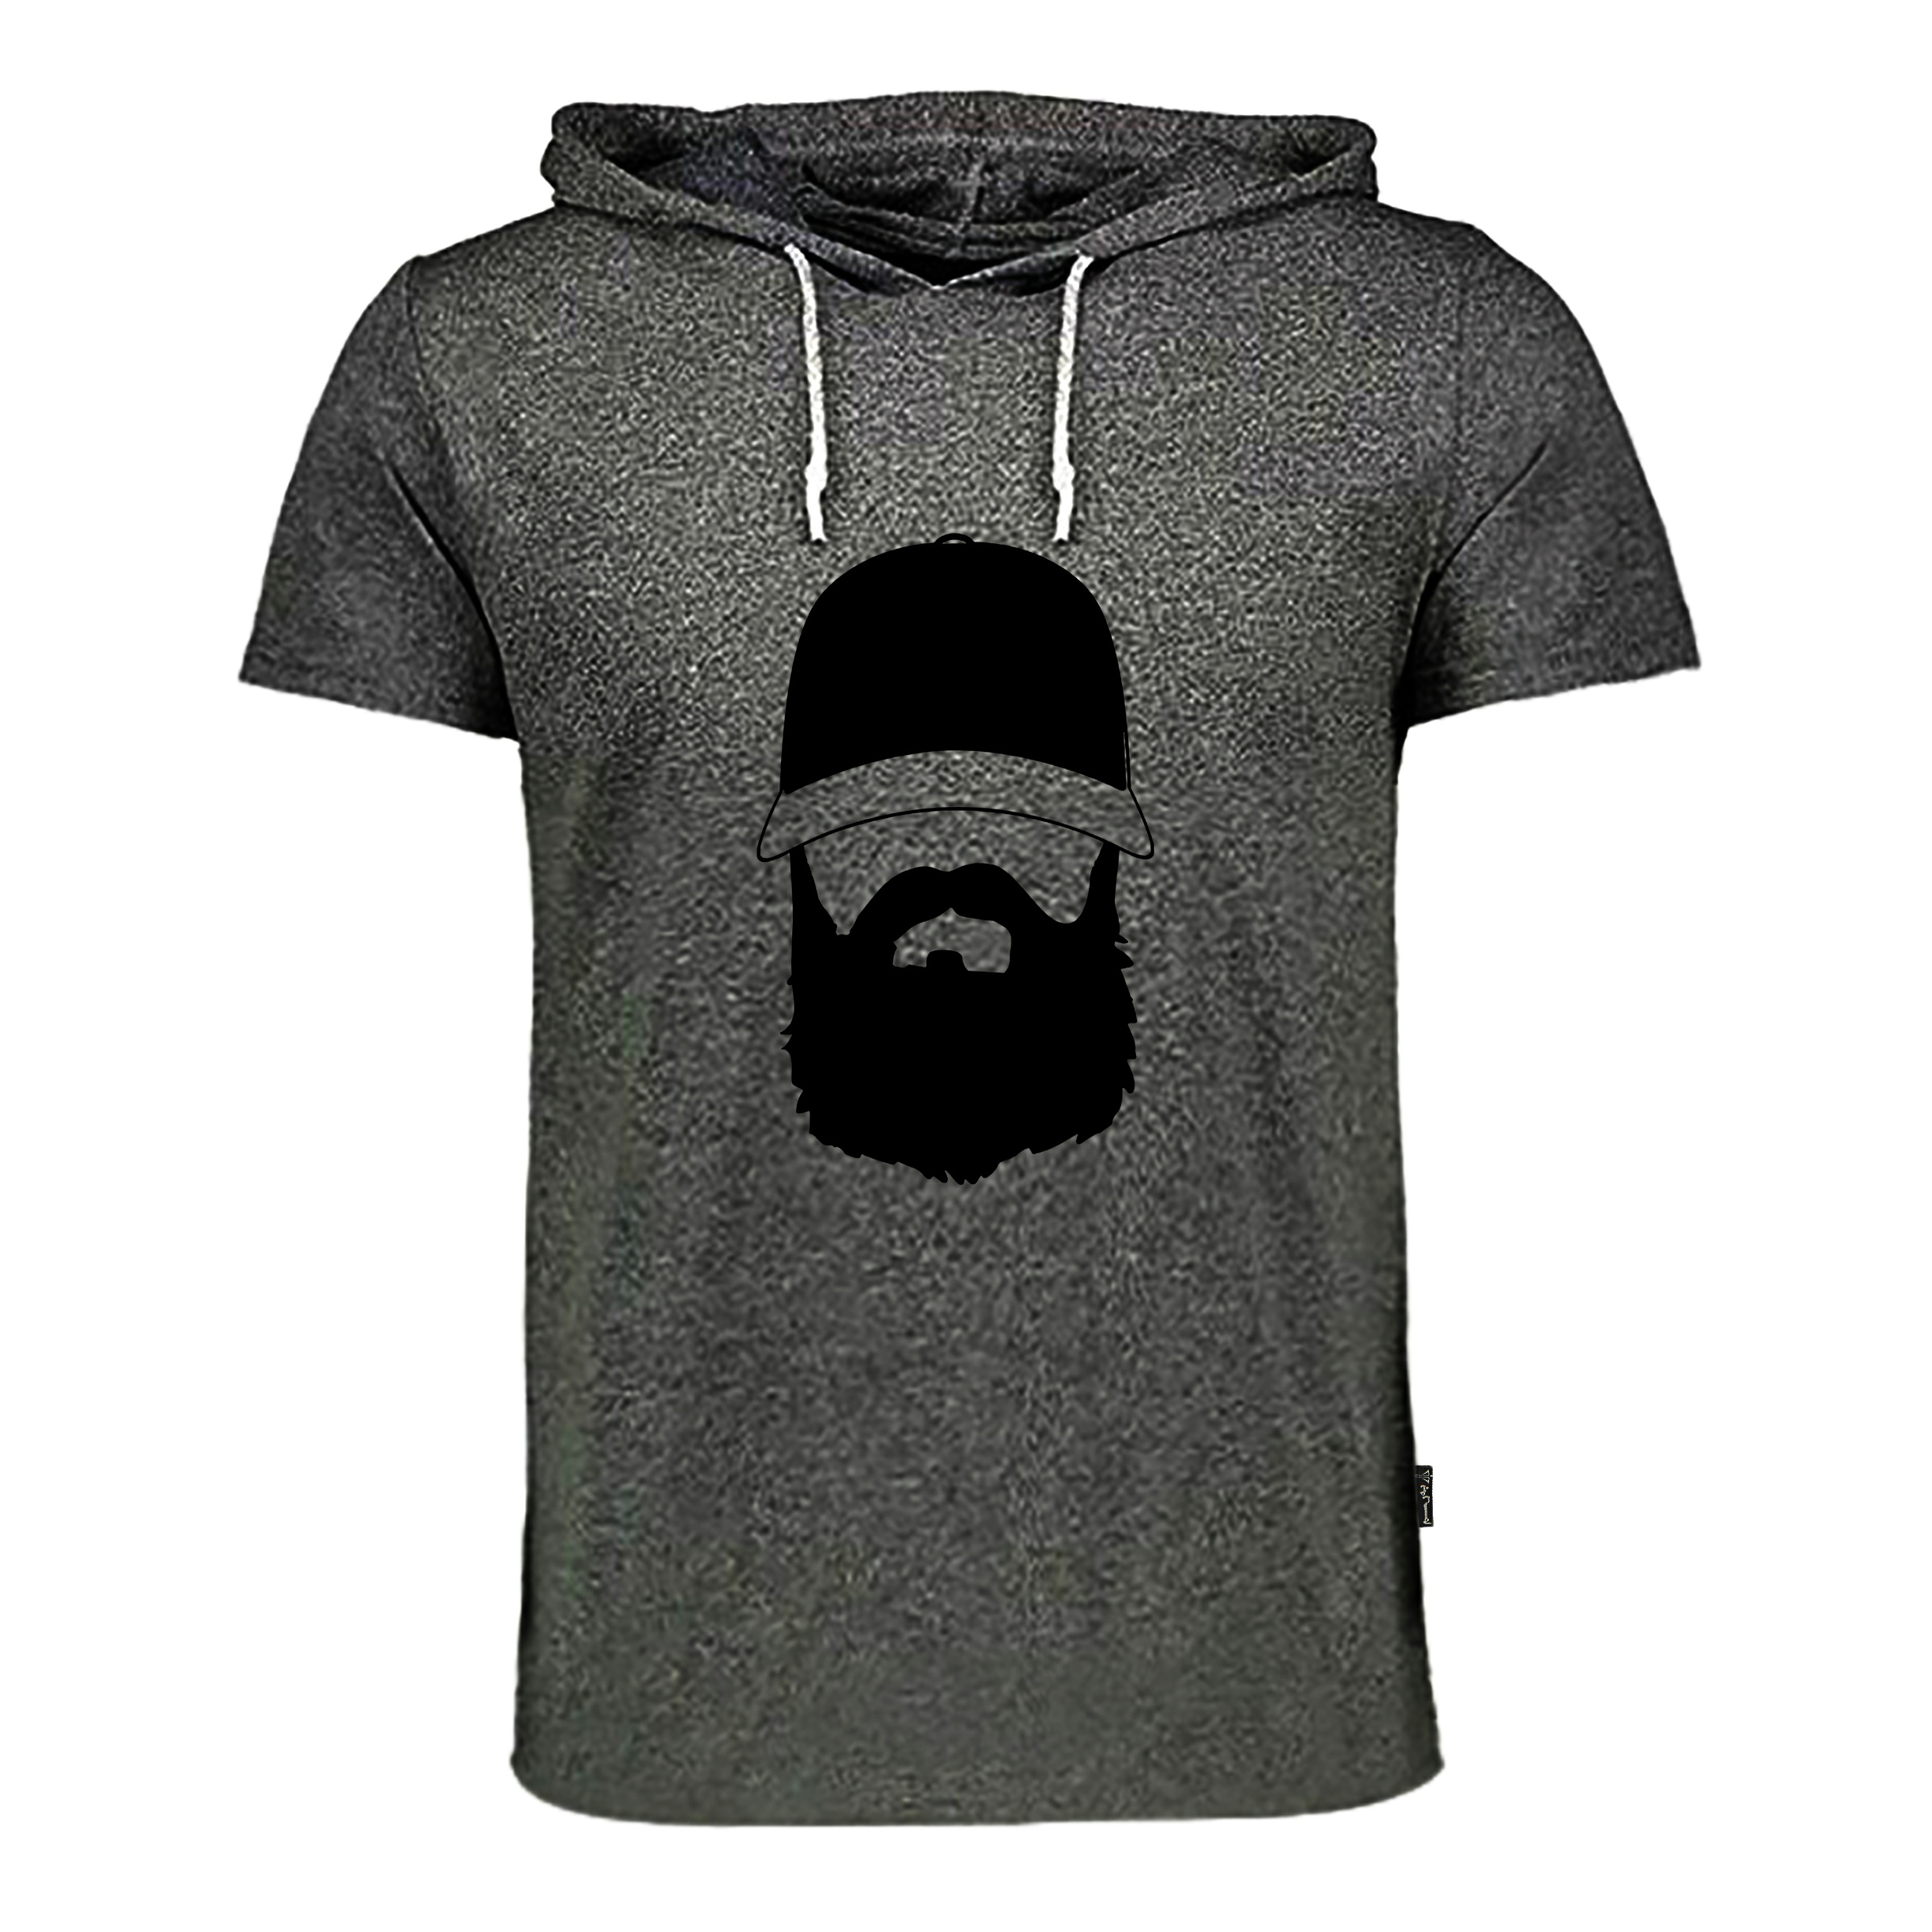 تی شرت کلاه دار مردانه به رسم مدل ریش -  - 1